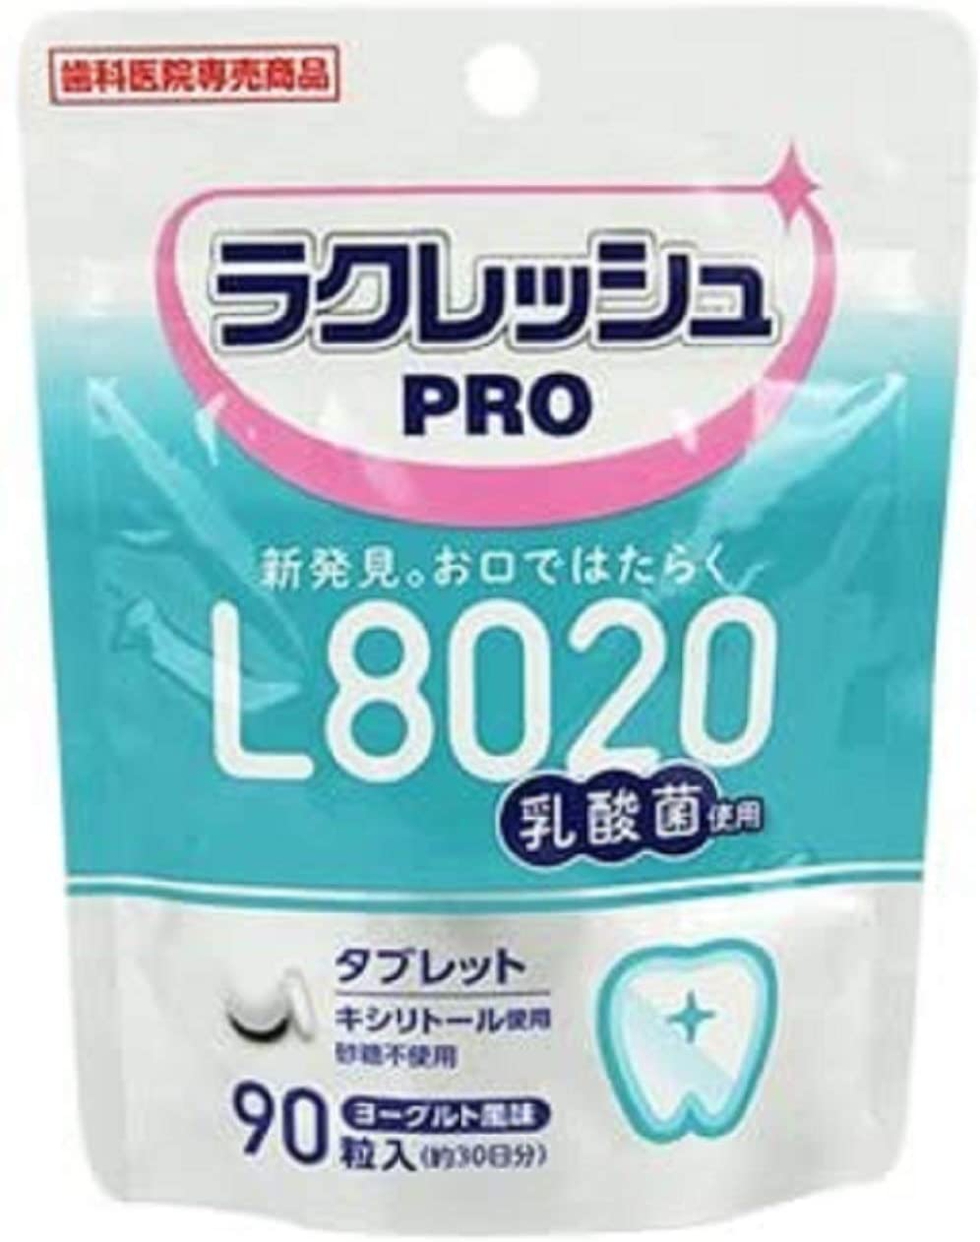 YOSHIDA(ヨシダ) L8020乳酸菌 ラクレッシュPRO タブレットの商品画像1 